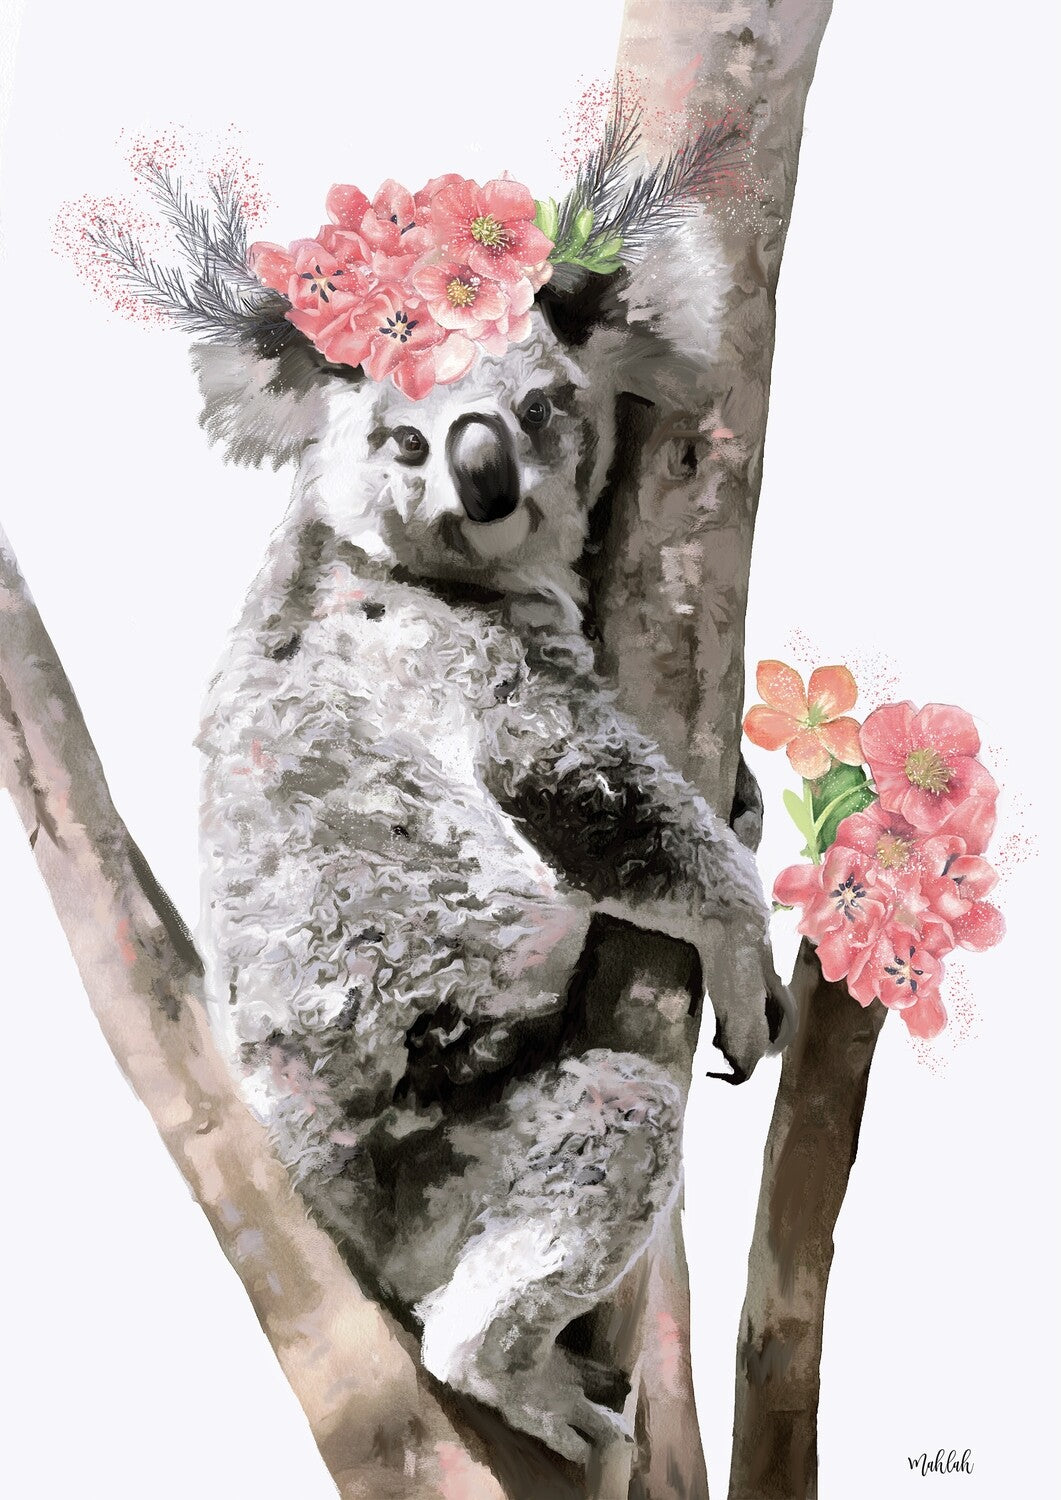 Karri koala